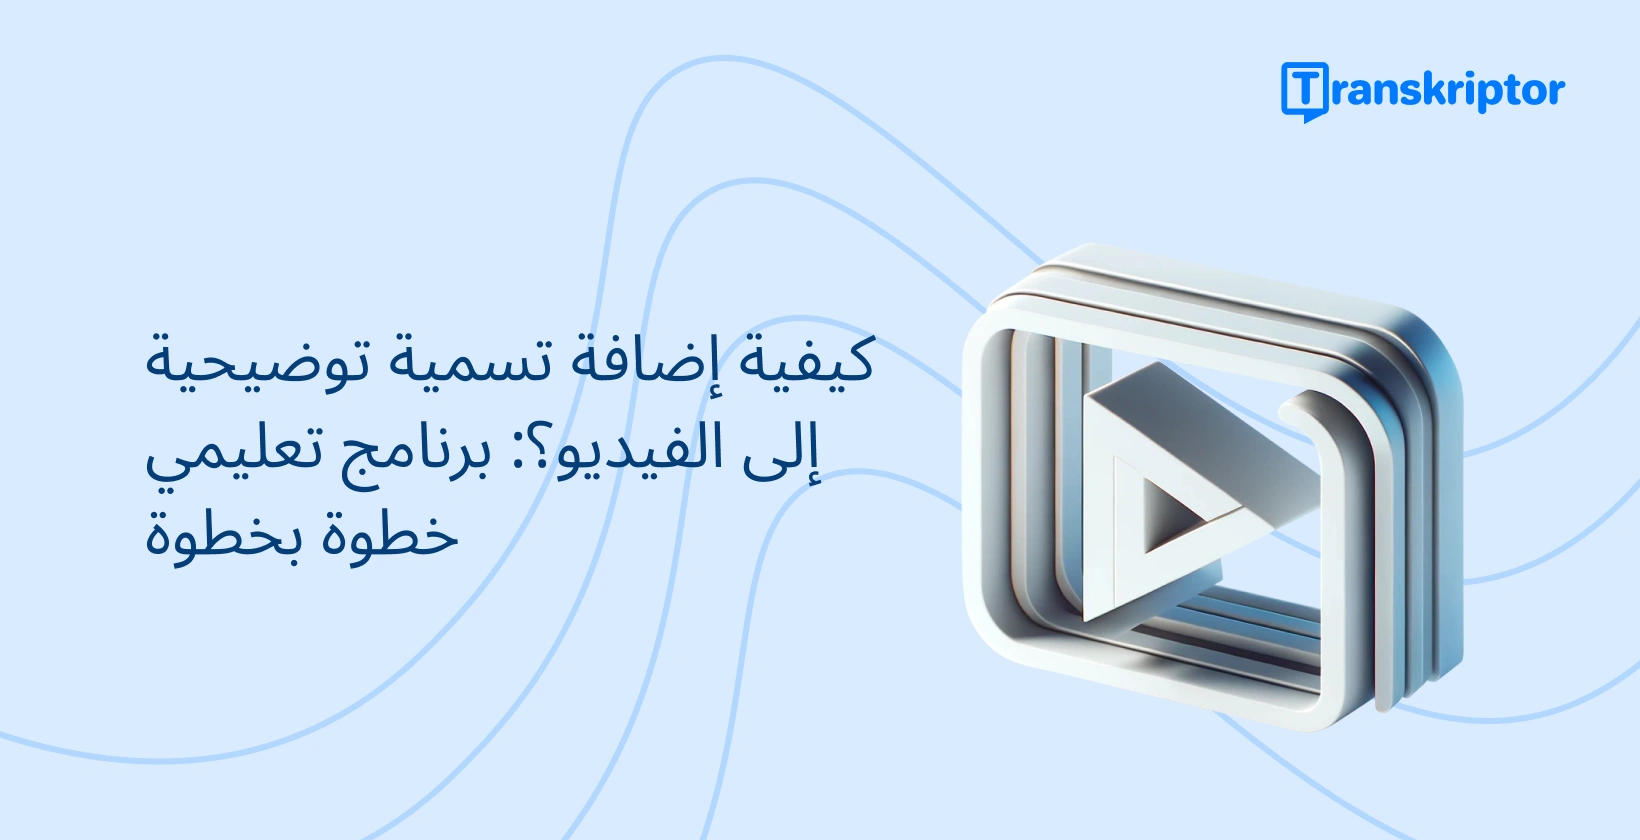 لافتة تعليمية خطوة بخطوة حول إضافة تسميات توضيحية إلى مقاطع الفيديو ، مع رمز زر التشغيل الذي يرمز إلى تحرير الفيديو.